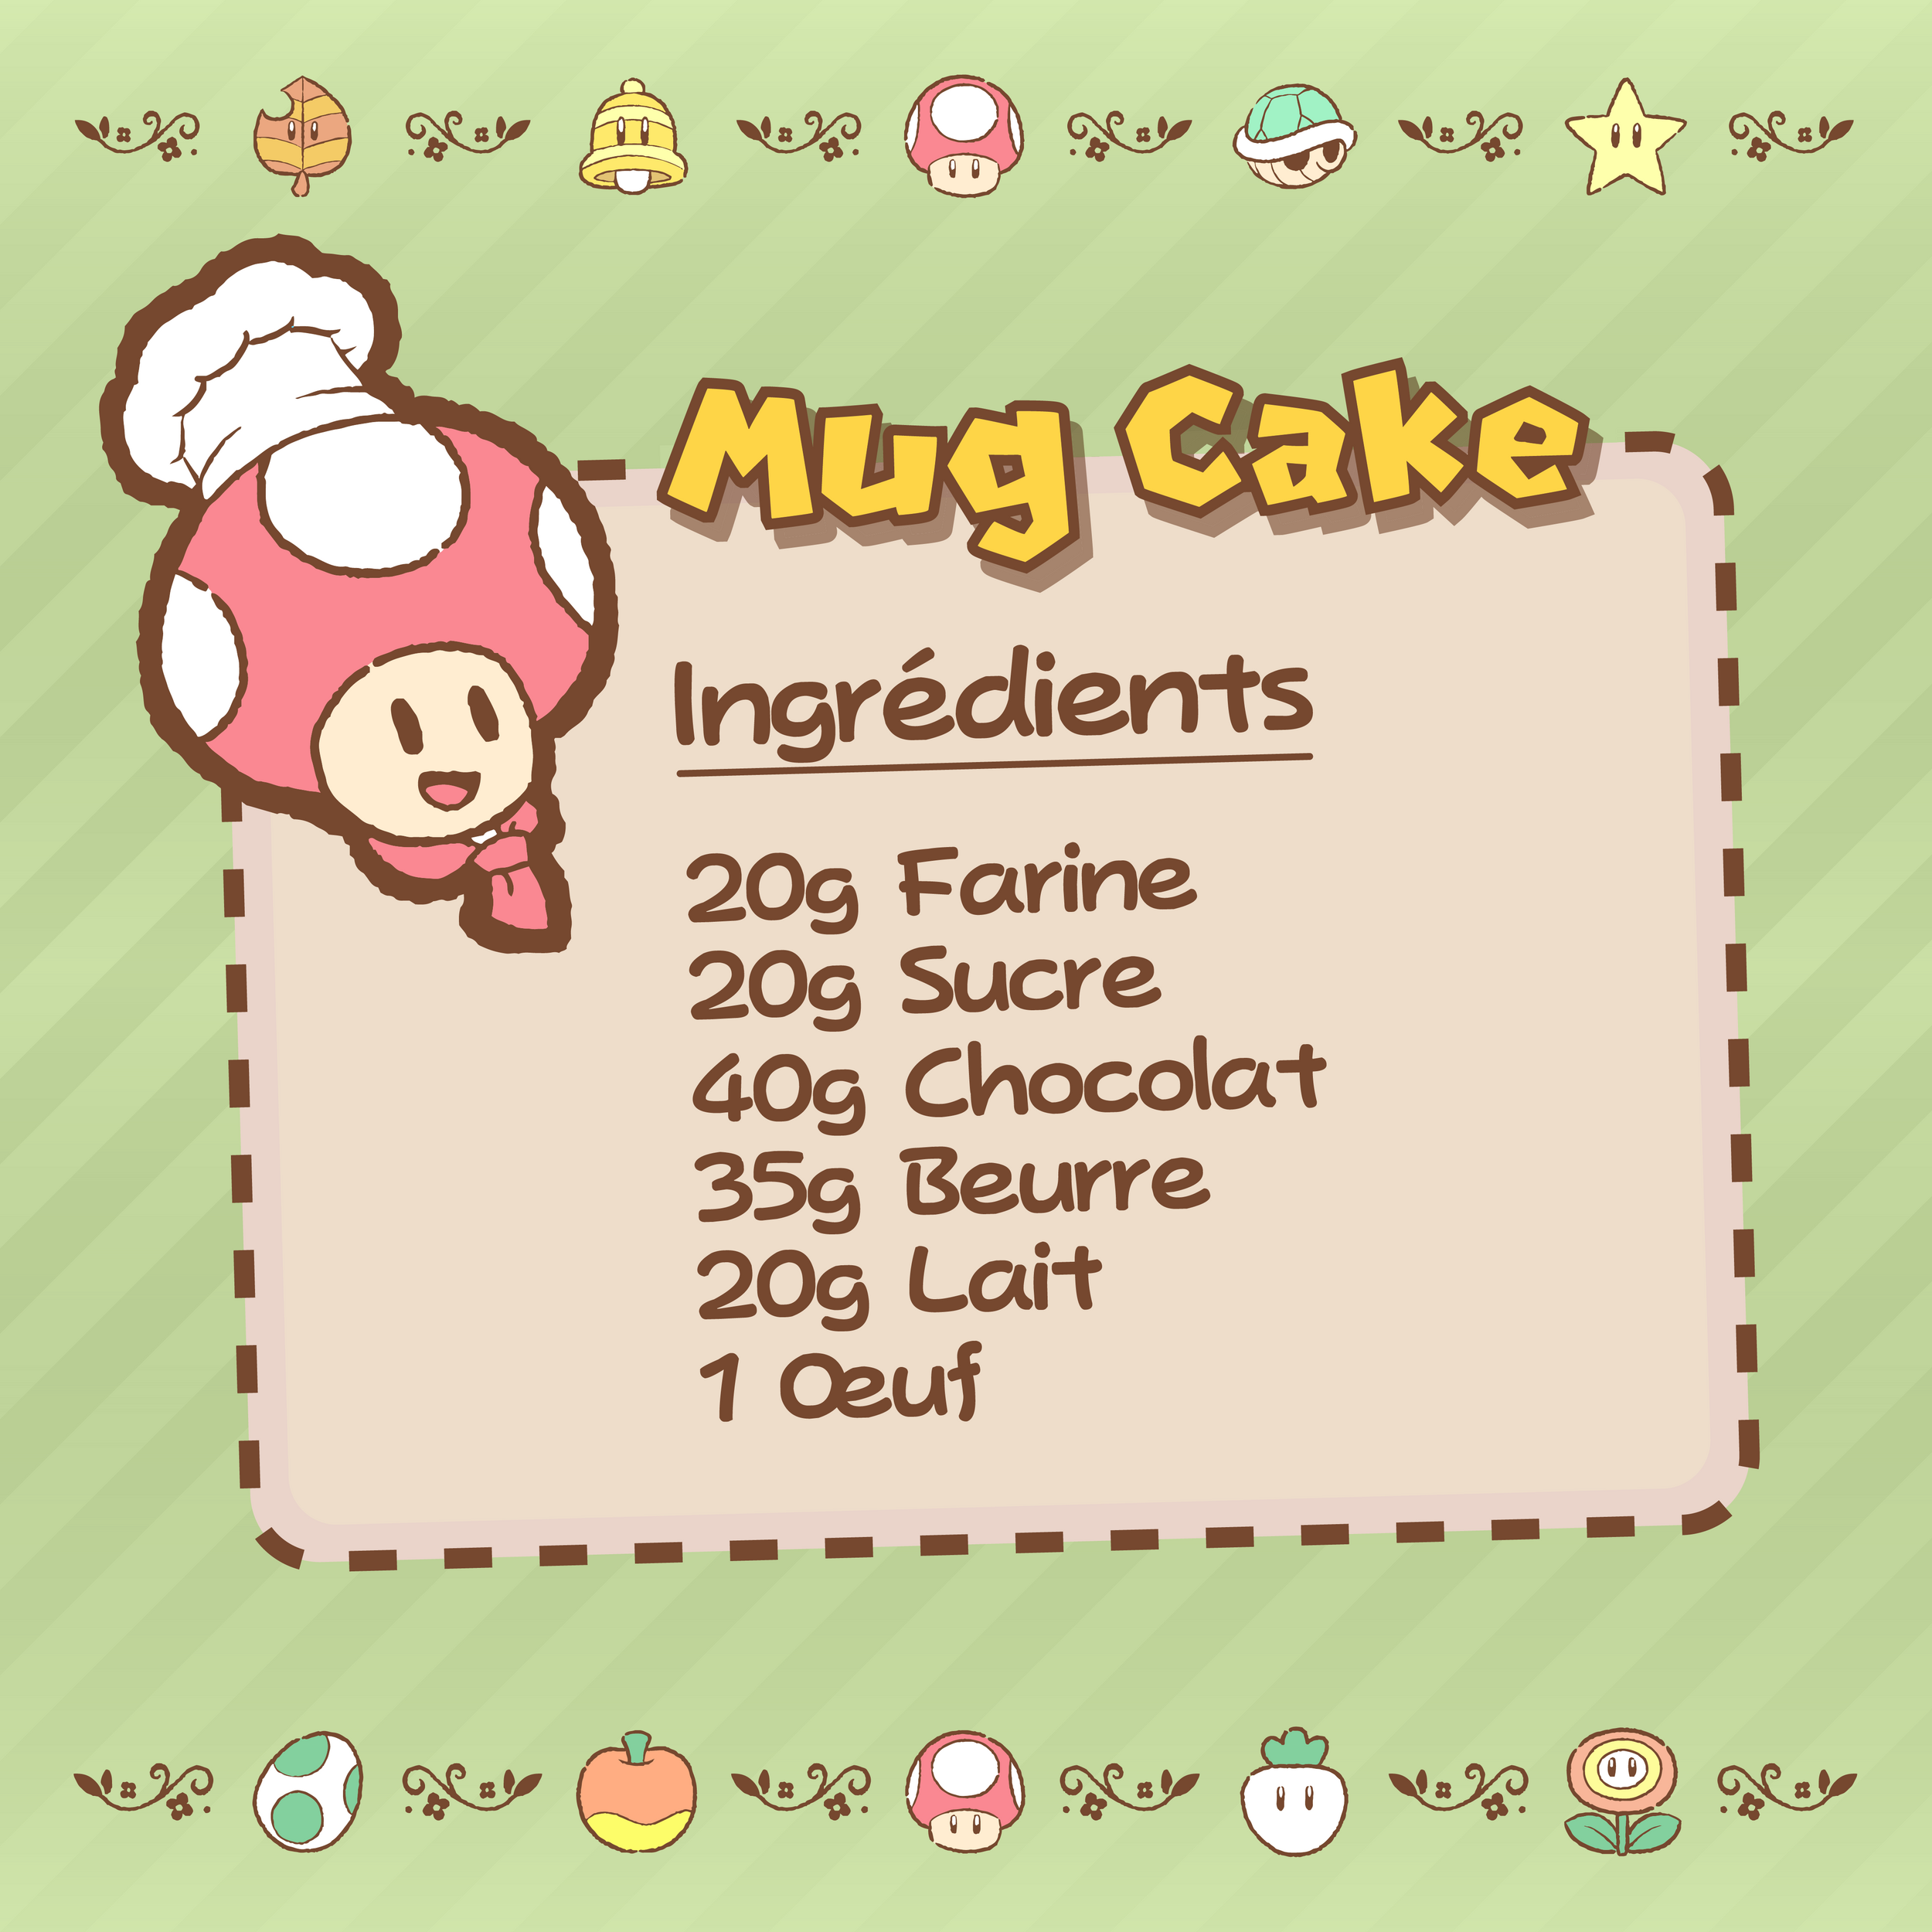 Mapping Mug Cake 2